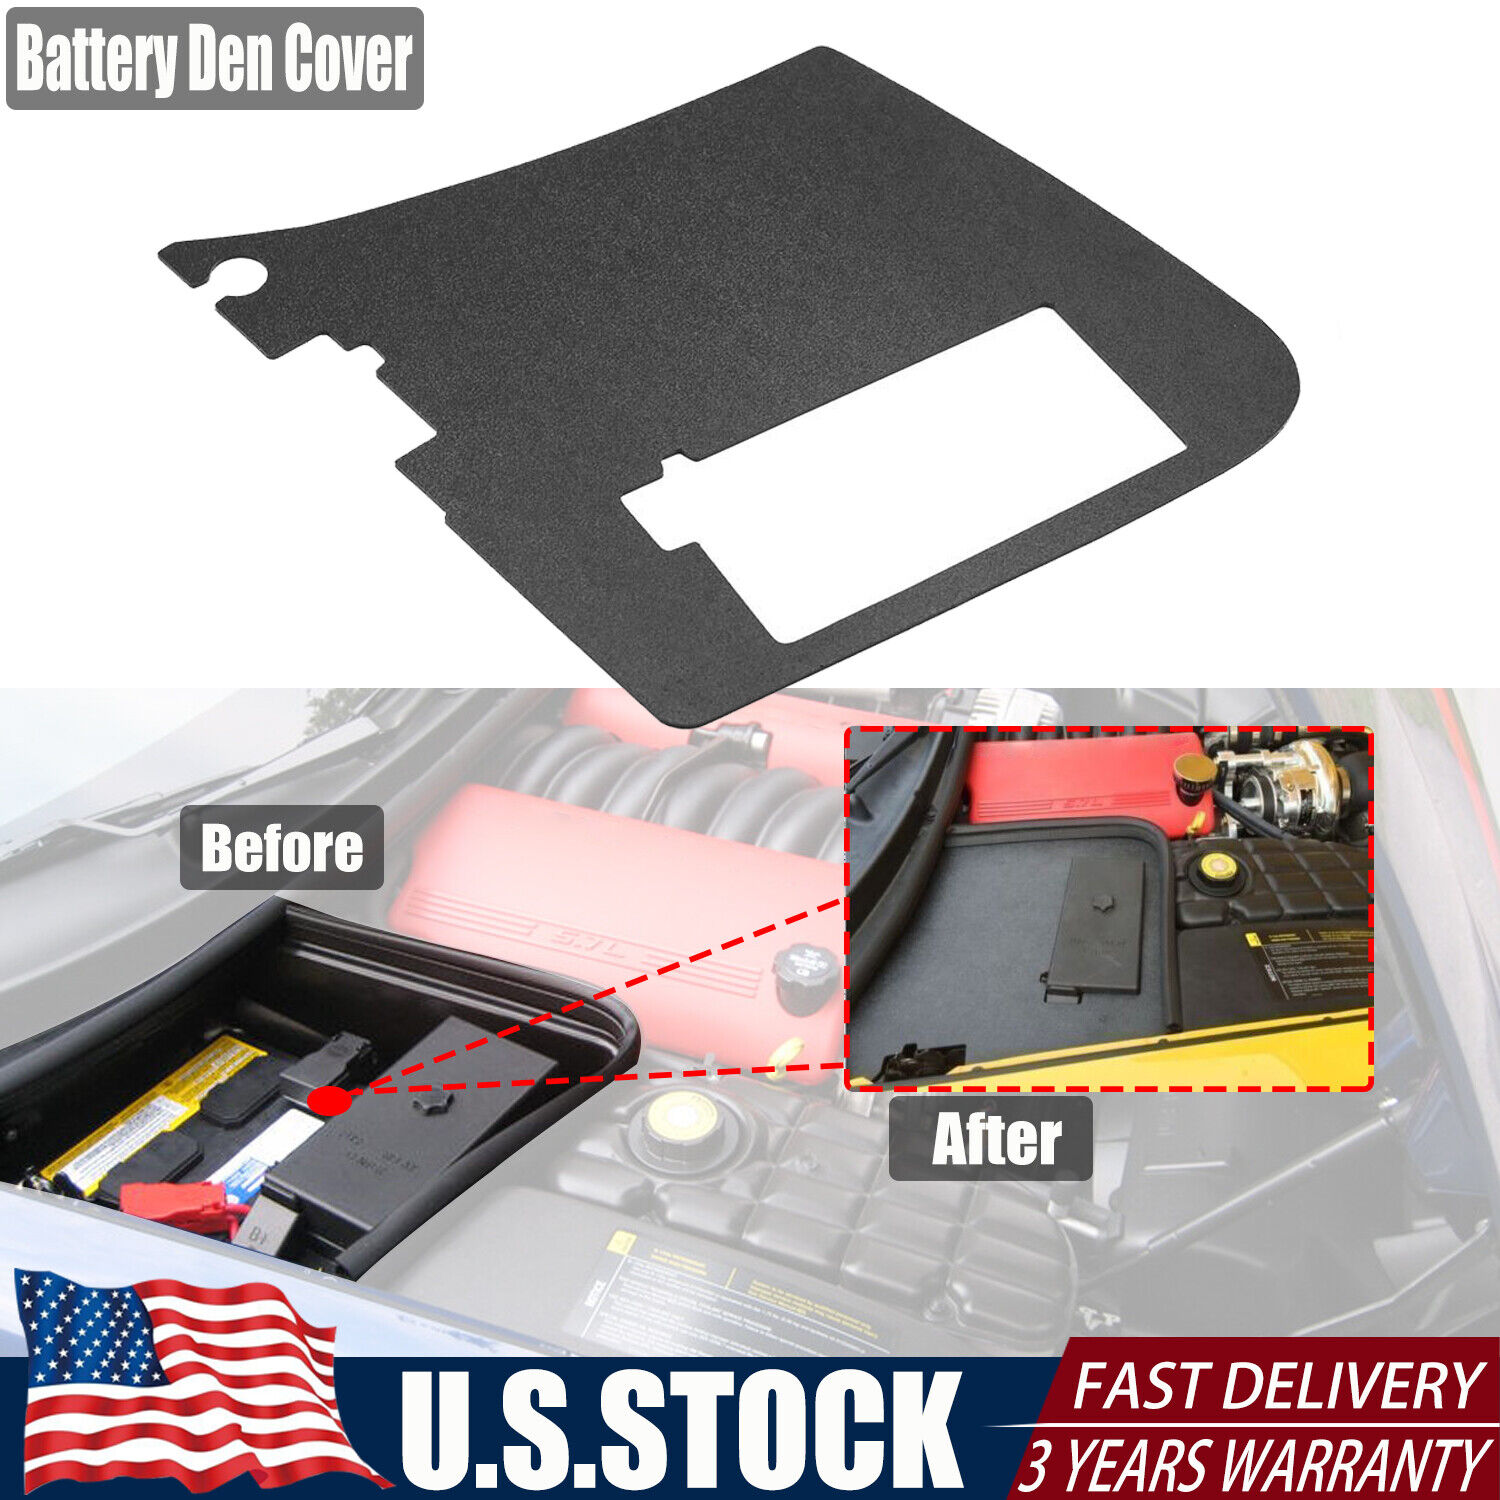 For Chevrolet C5 Corvette Battery Den Cover Plate  Lid top